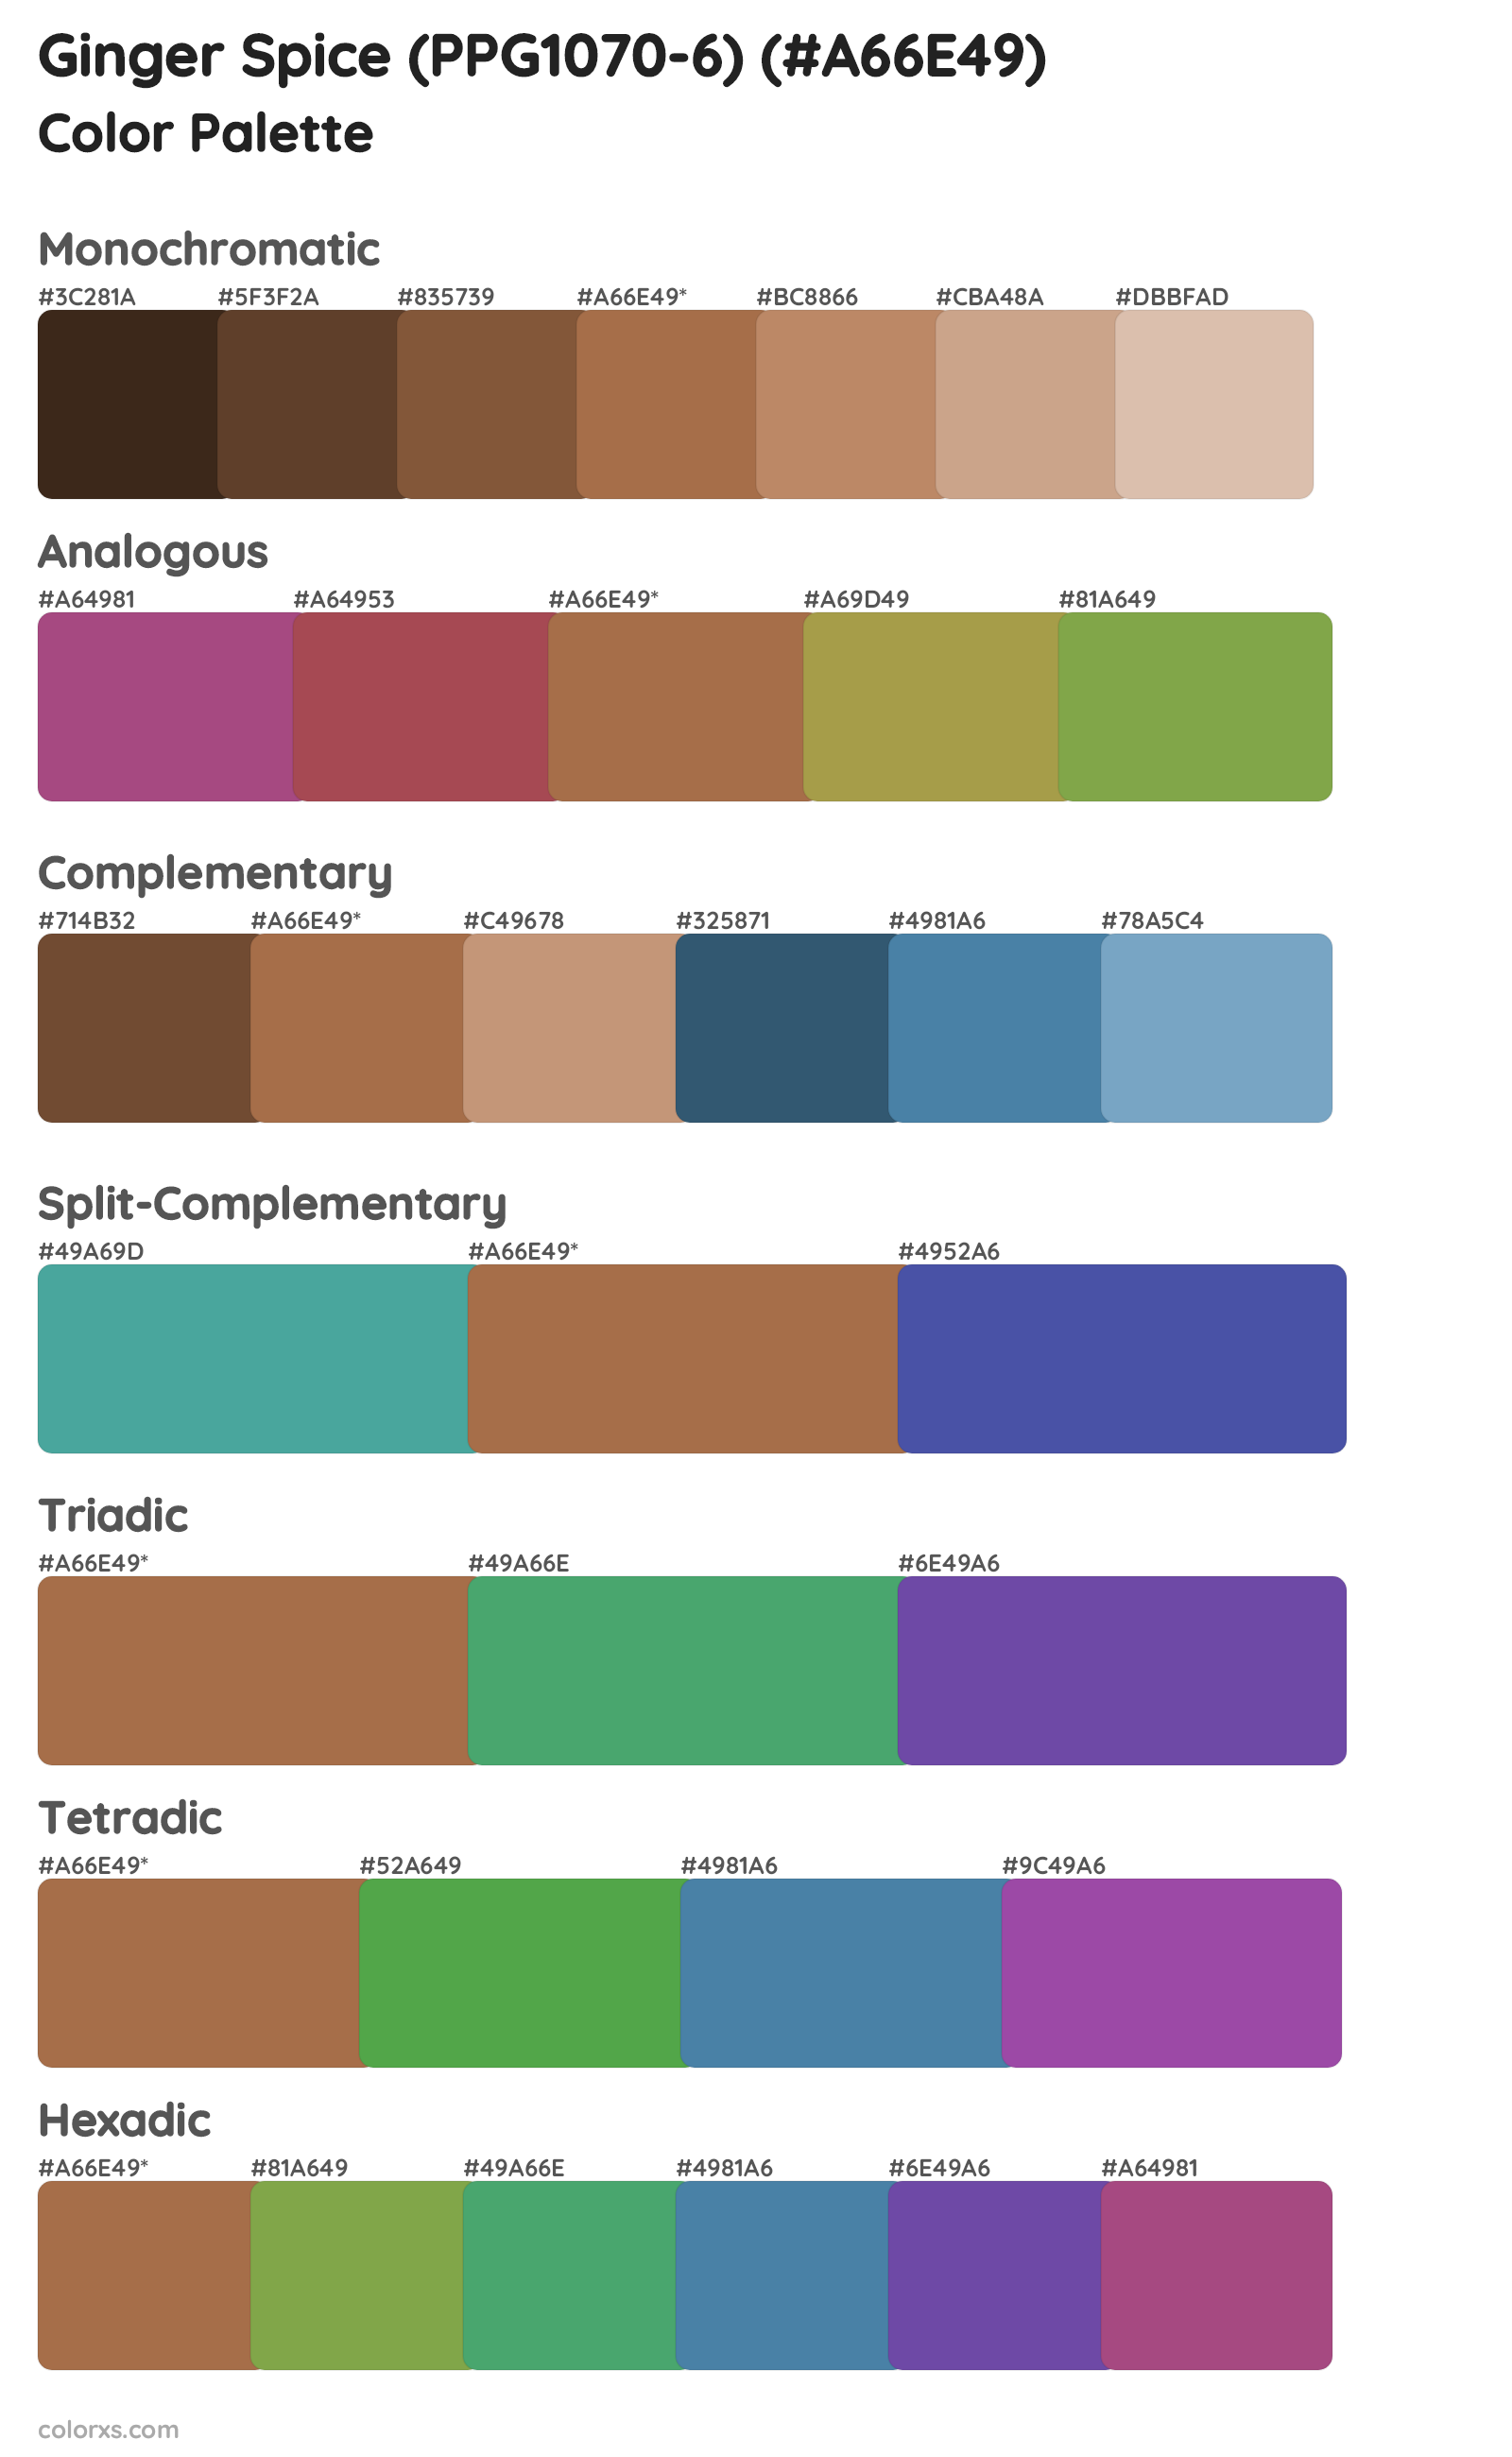 Ginger Spice (PPG1070-6) Color Scheme Palettes